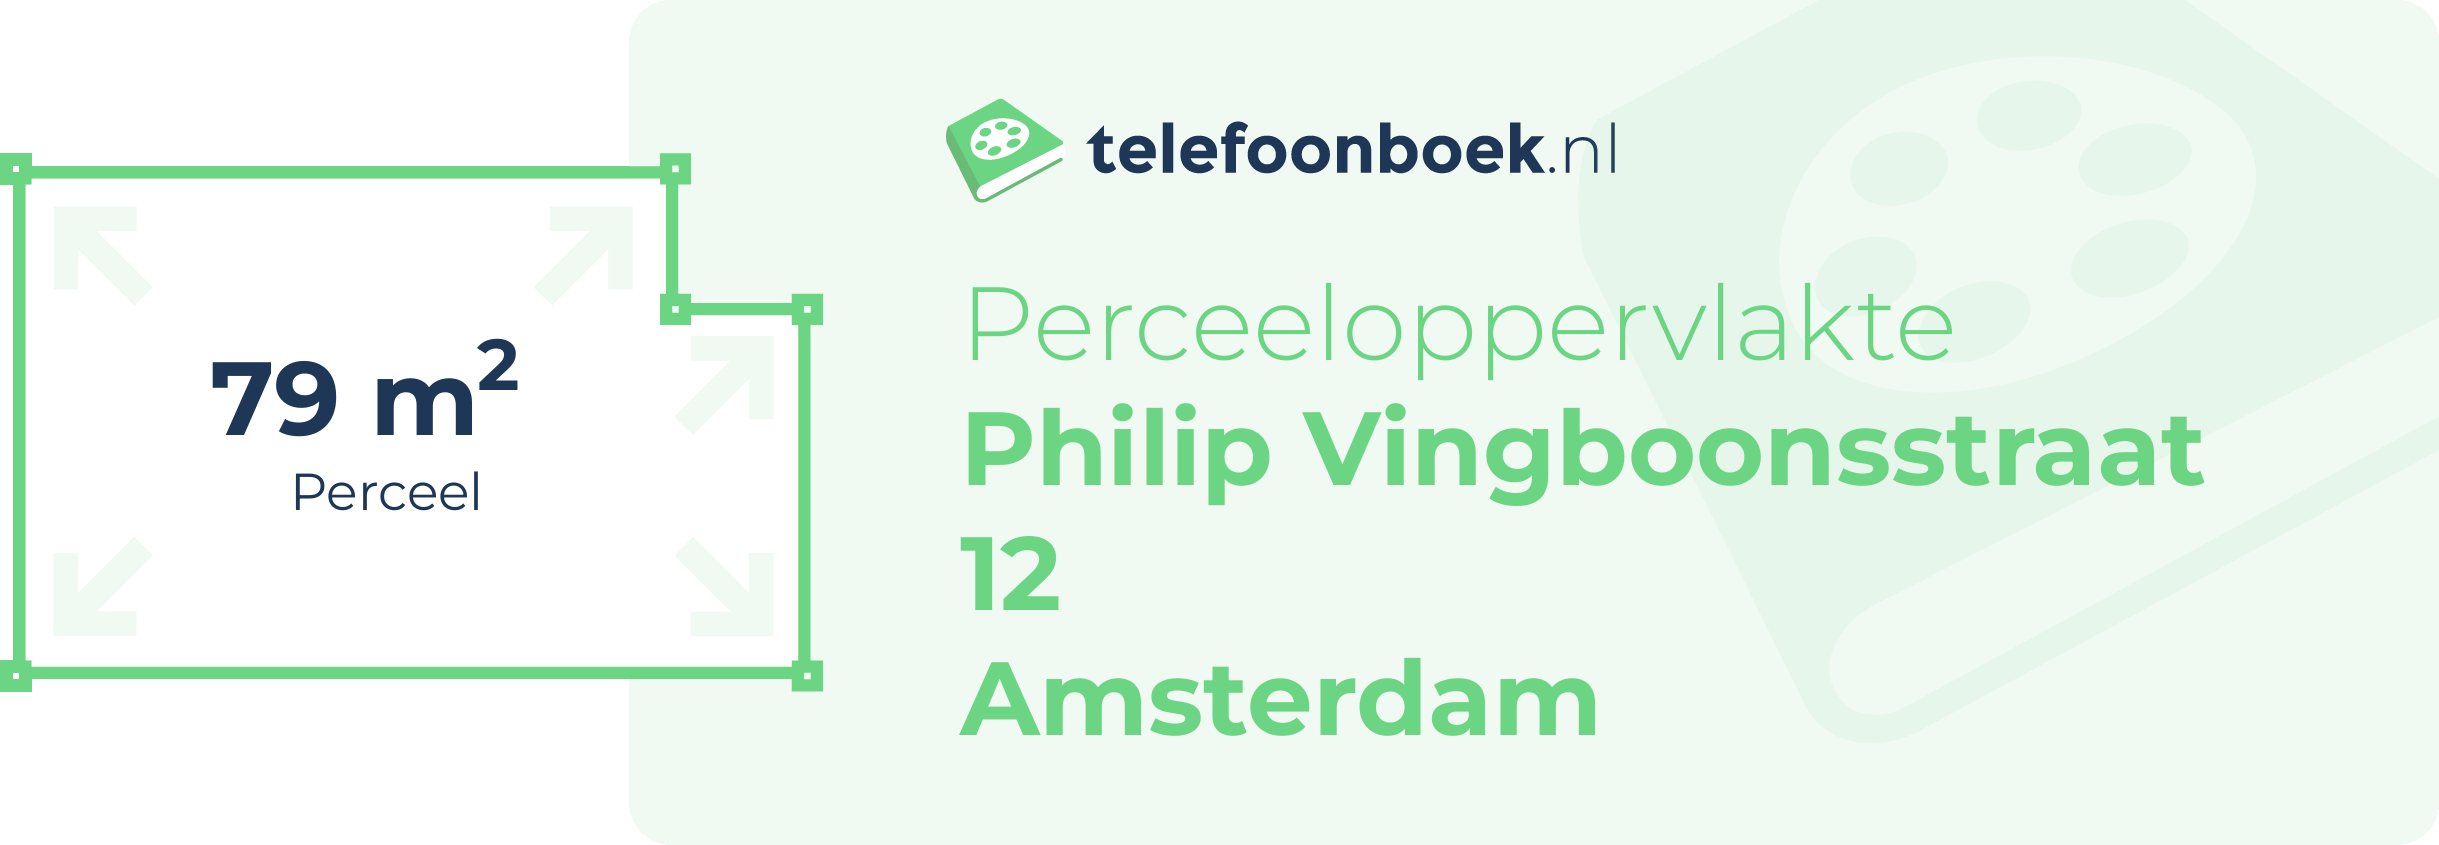 Perceeloppervlakte Philip Vingboonsstraat 12 Amsterdam